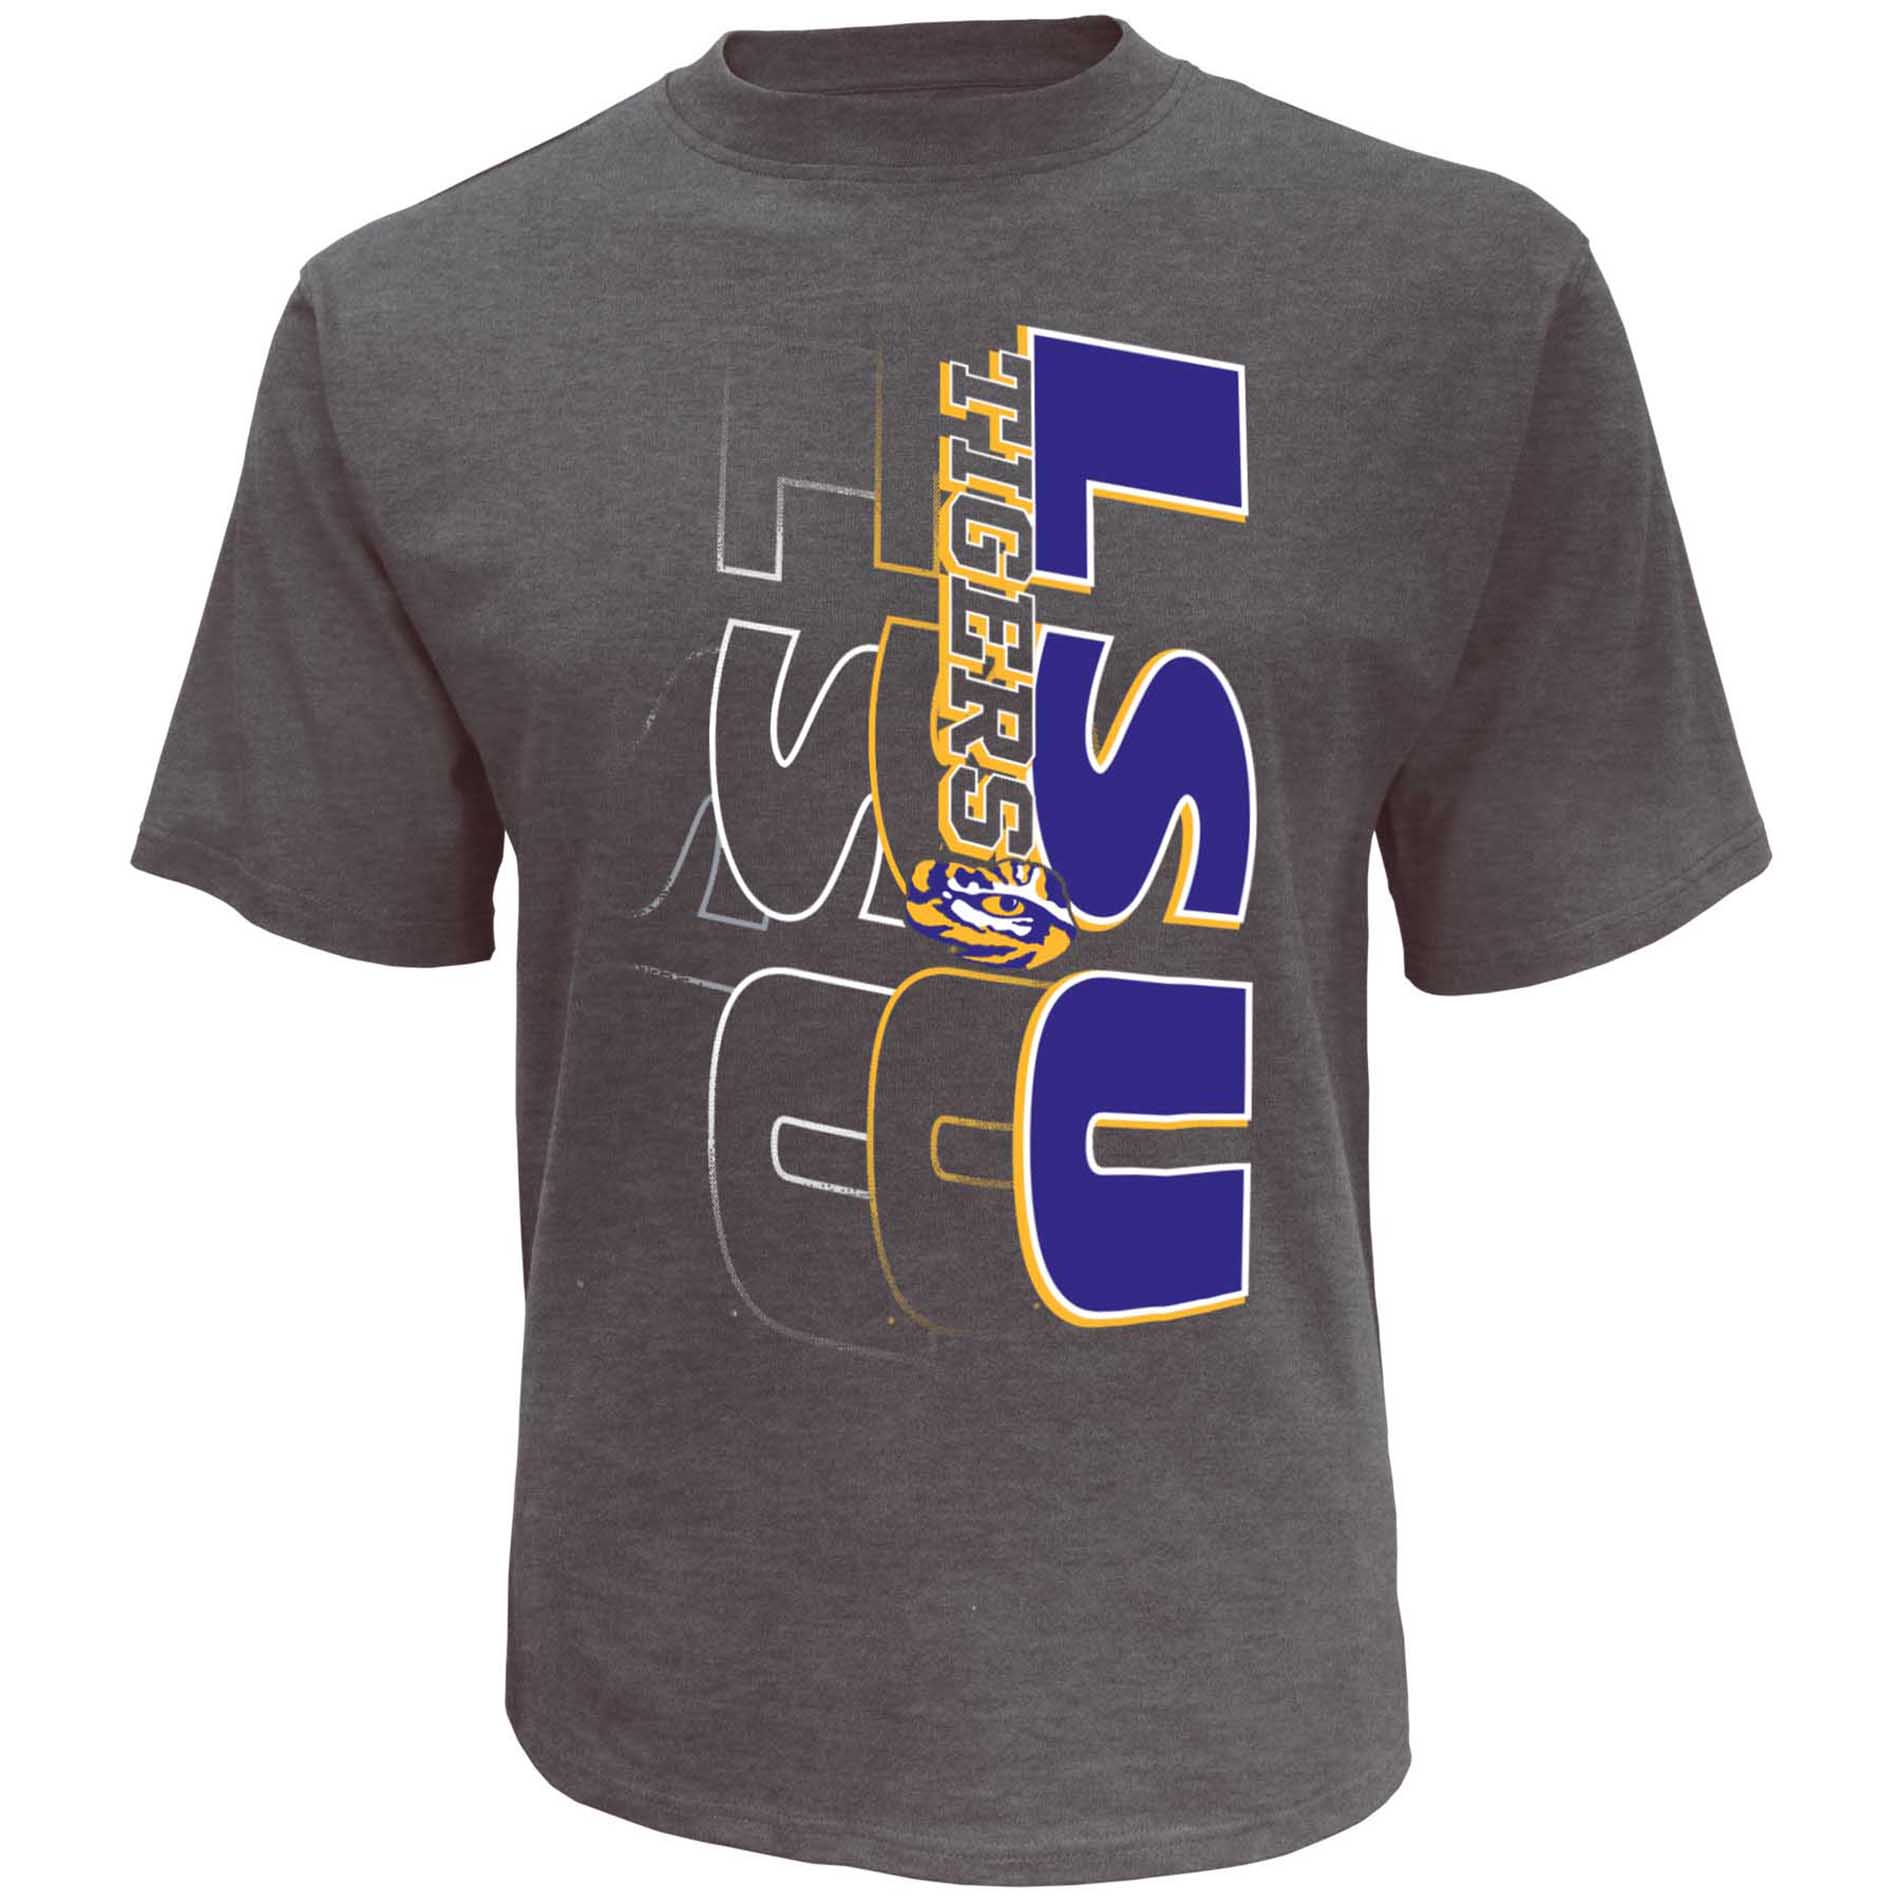 NCAA Mens' LSU Tigers Short Sleeve Print Tee